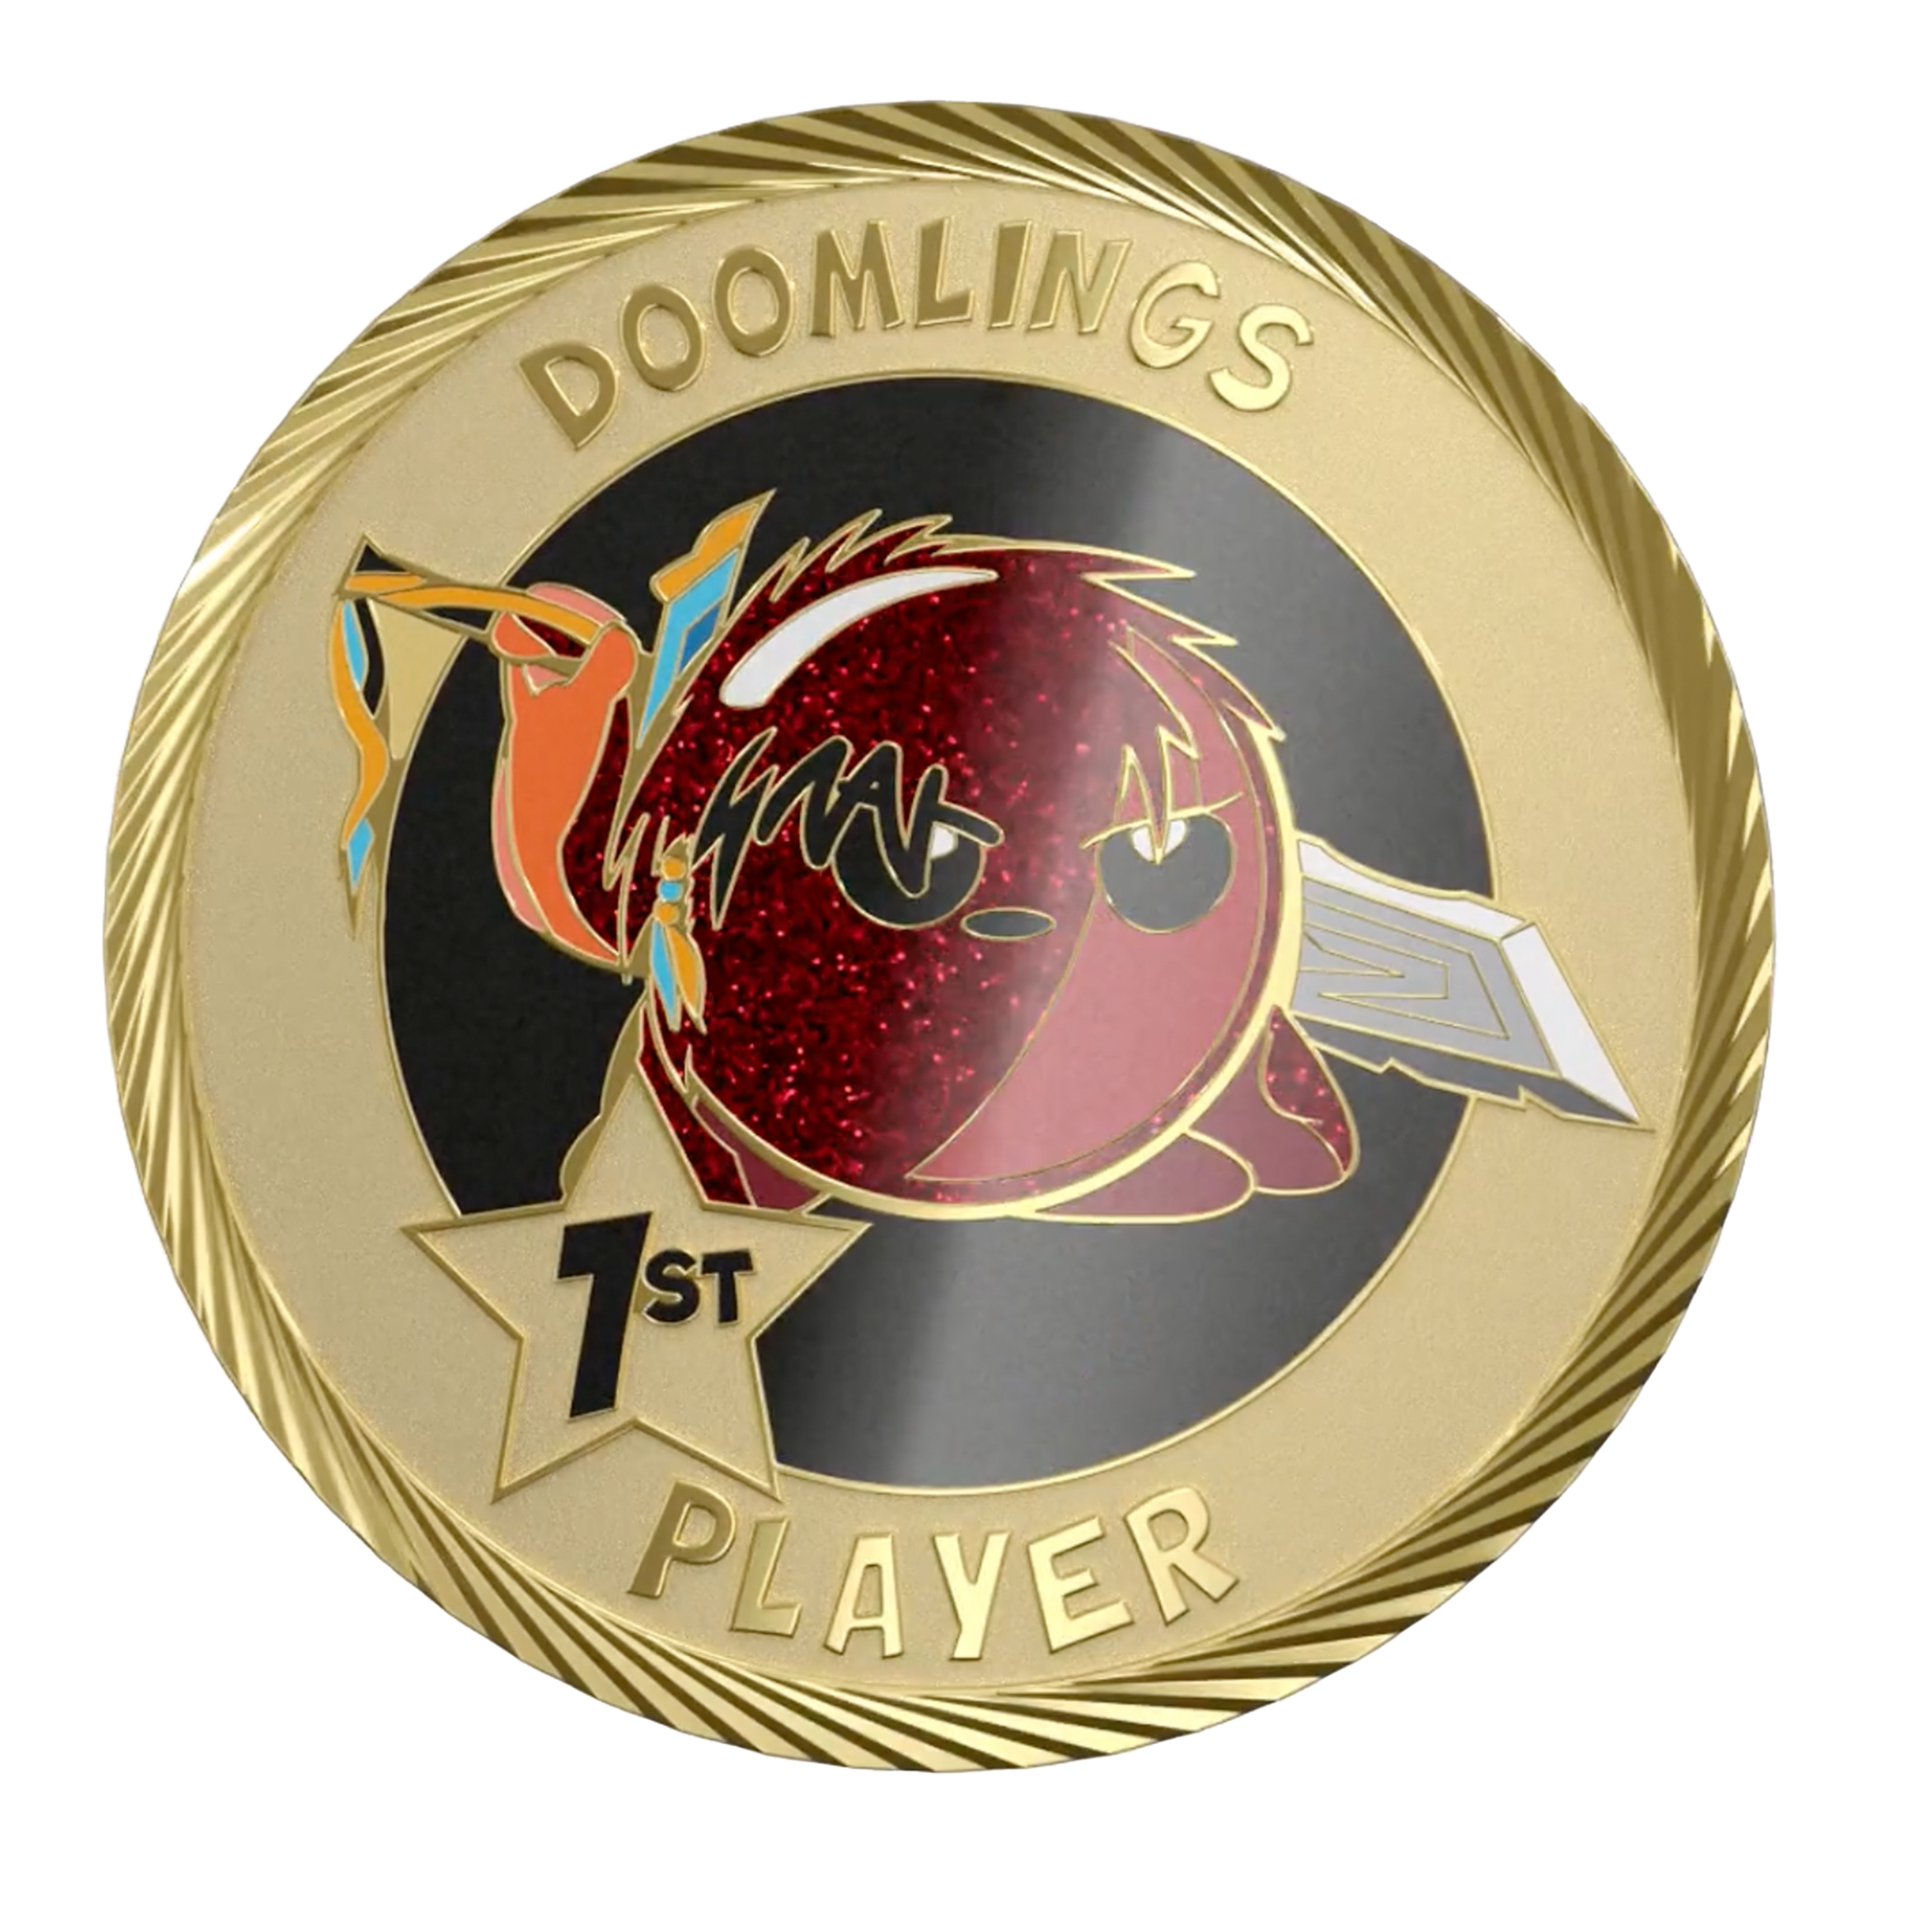 Epic 1st Player Medallion